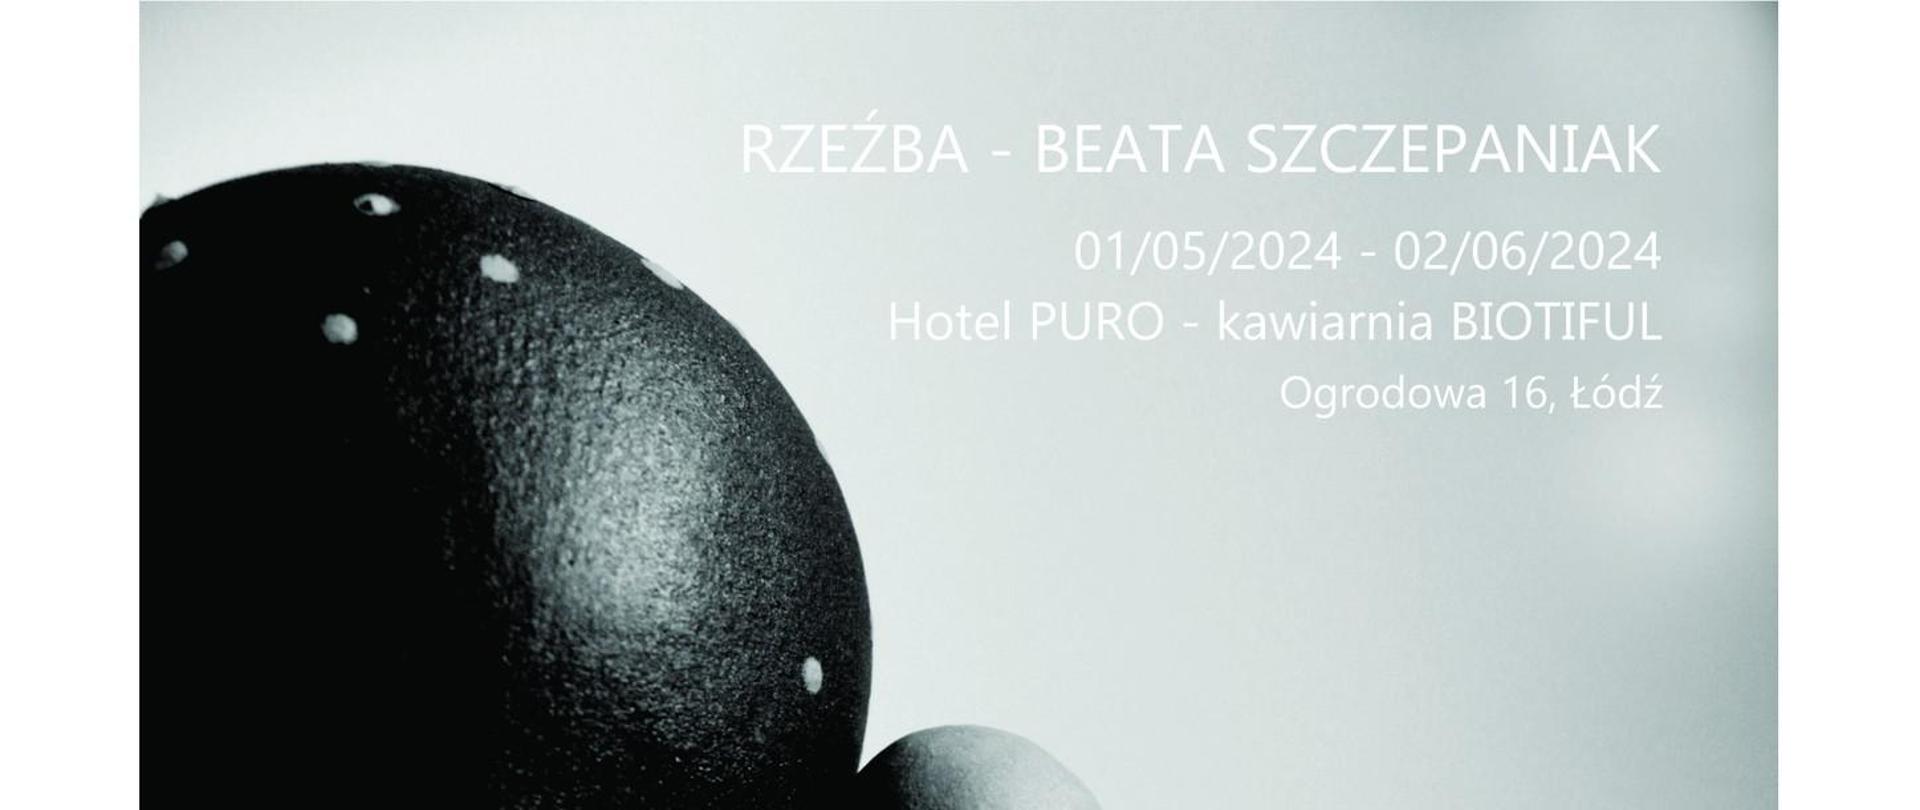 Plakat: na szarym tle czarna forma ceramiczna, w prawym górnym rogu napis: Rzeźba – Beata Szczepaniak 01/05/2024 - 02/06/2024 Hotel PURO - kawiarnia BIOTIFUL Ogrodowa 16, Łódź